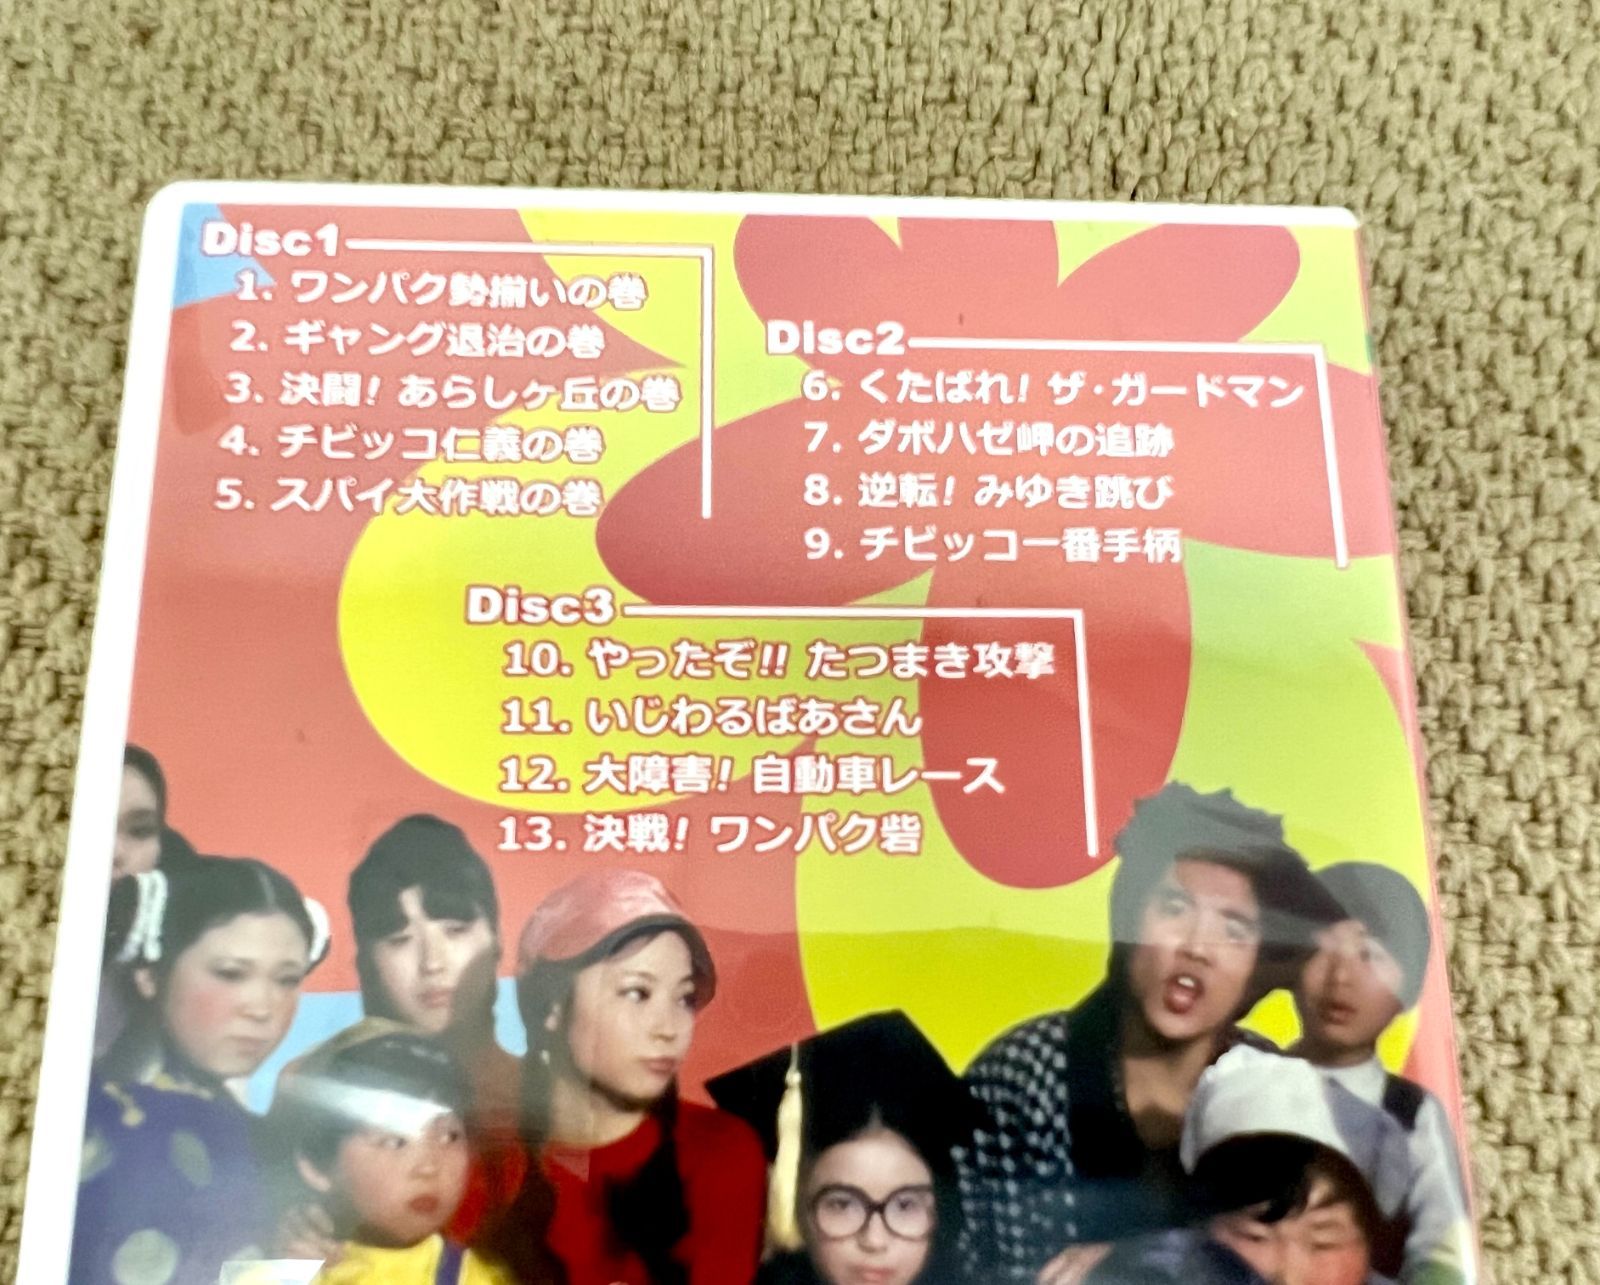 DVD/昭和の名作ライブラリー 第39集 ワンパク番外地 コレクターズDVD デジタルリマスター版